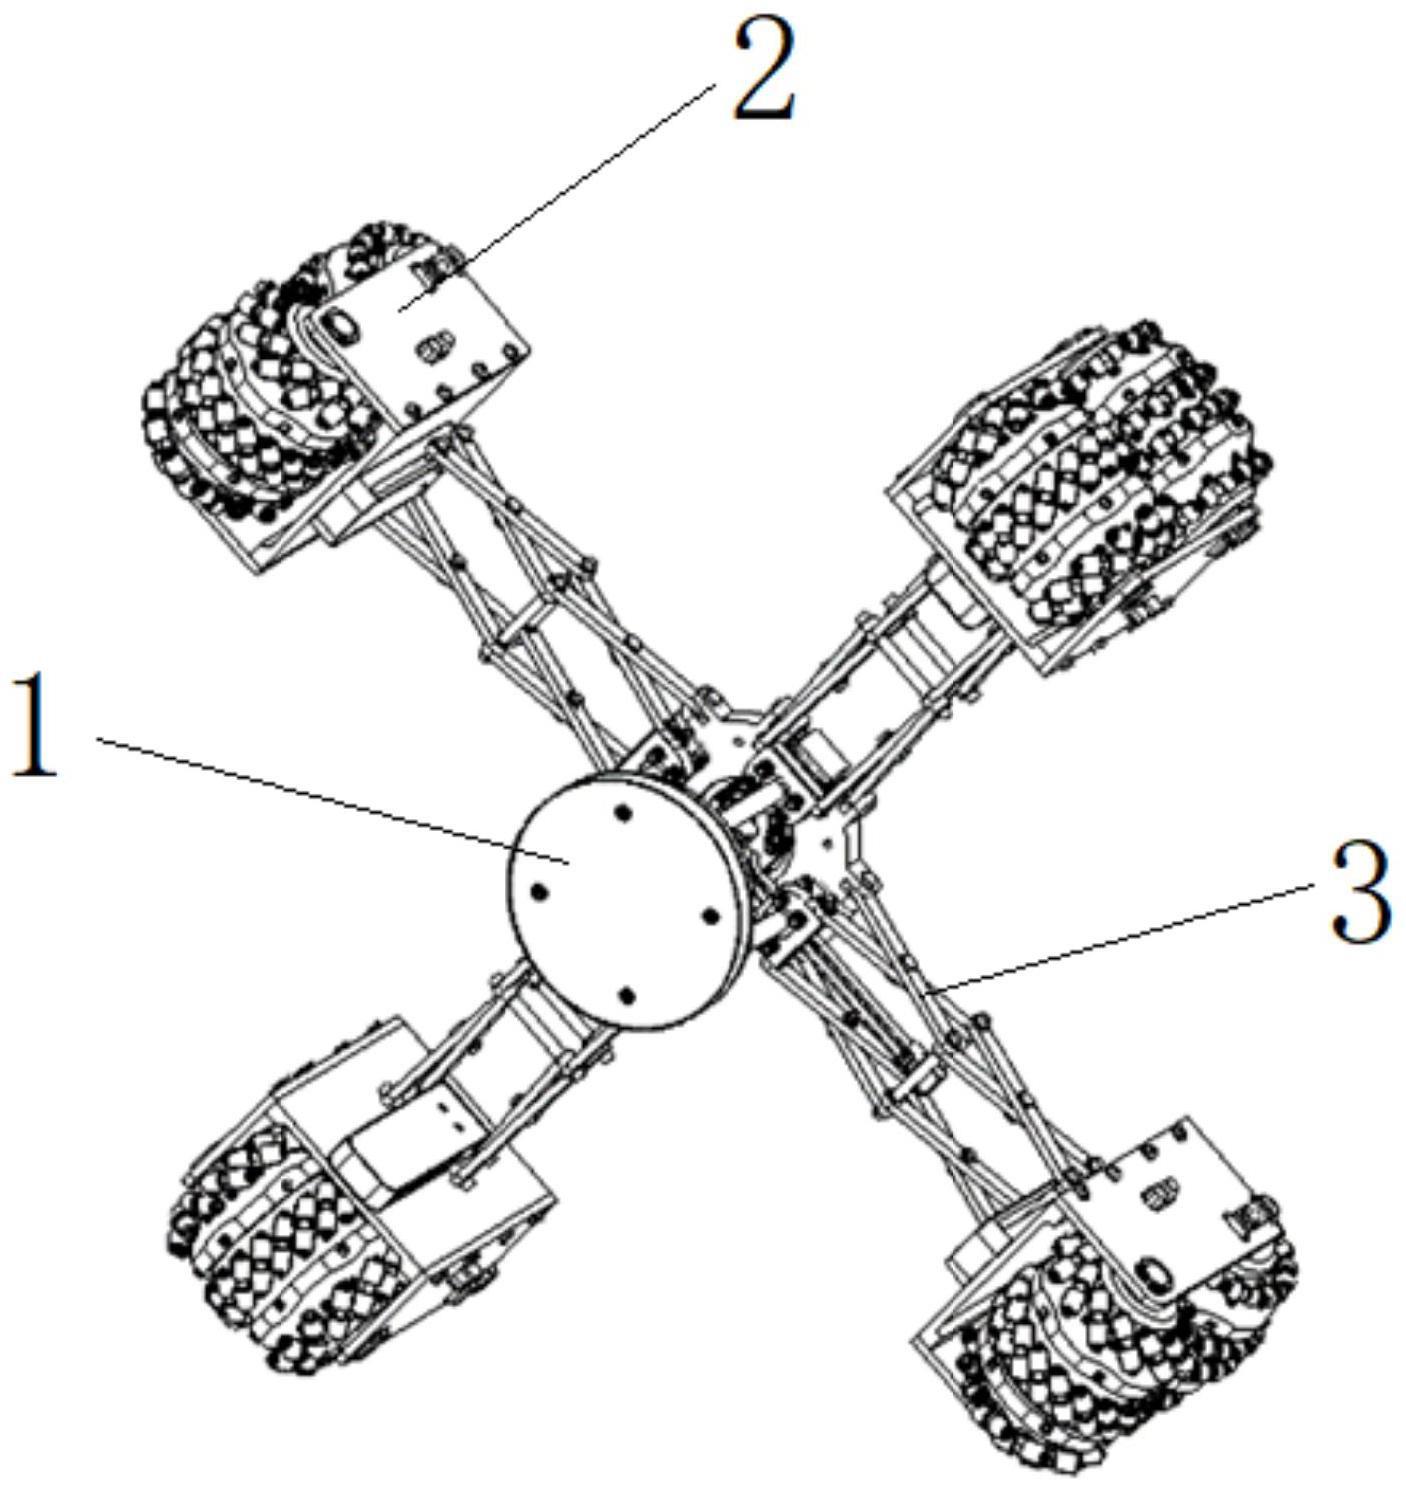 管道机器人的多模式麦克那姆式行动装置及辊子设计方法